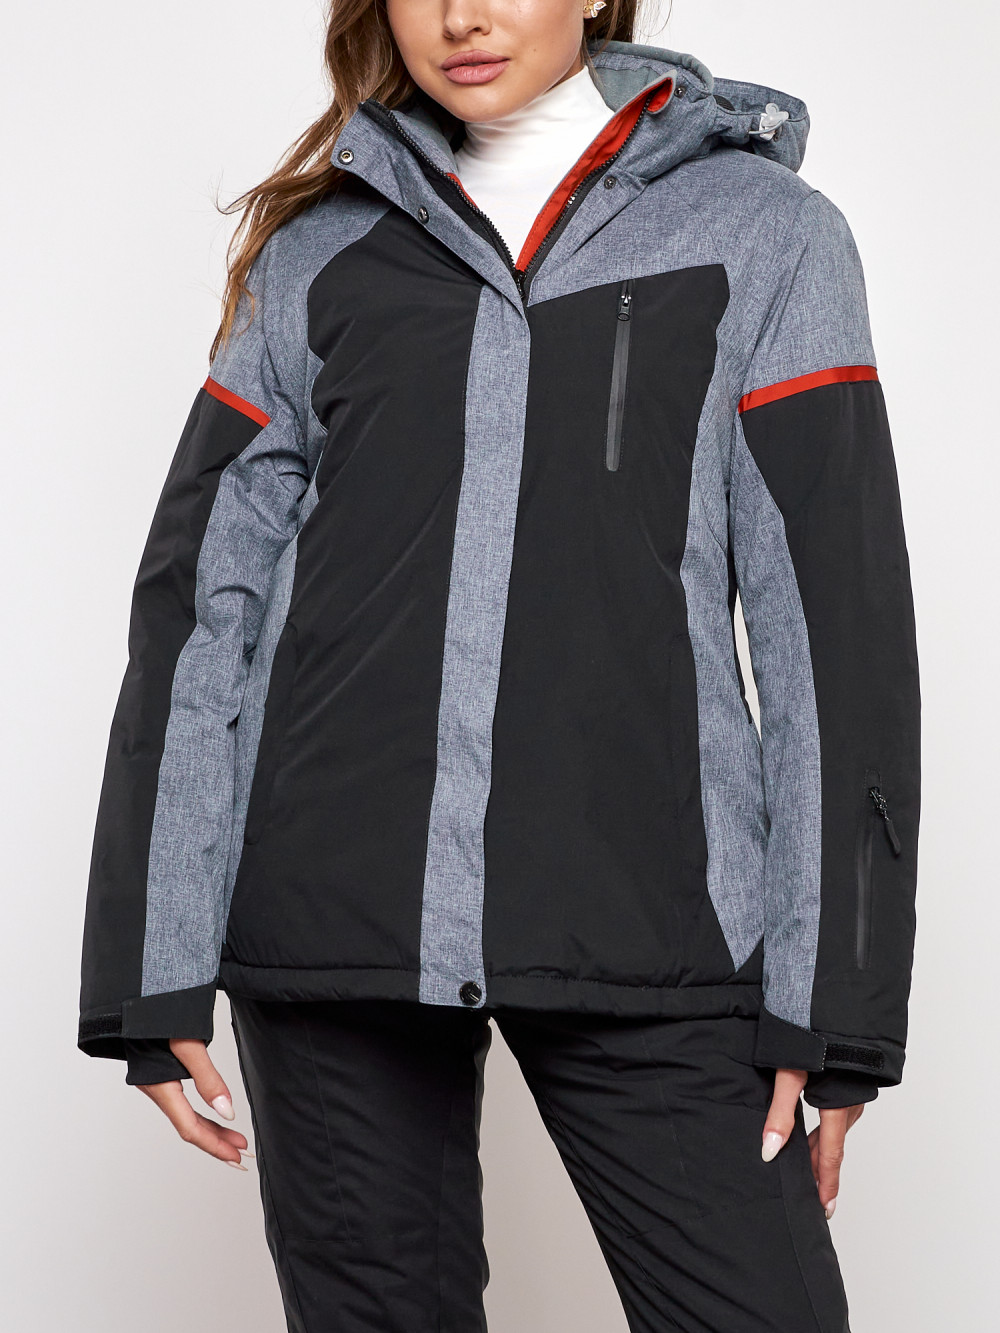 Горнолыжная куртка женская зимняя большого размера Chunmai AD2272-3Ch, 56